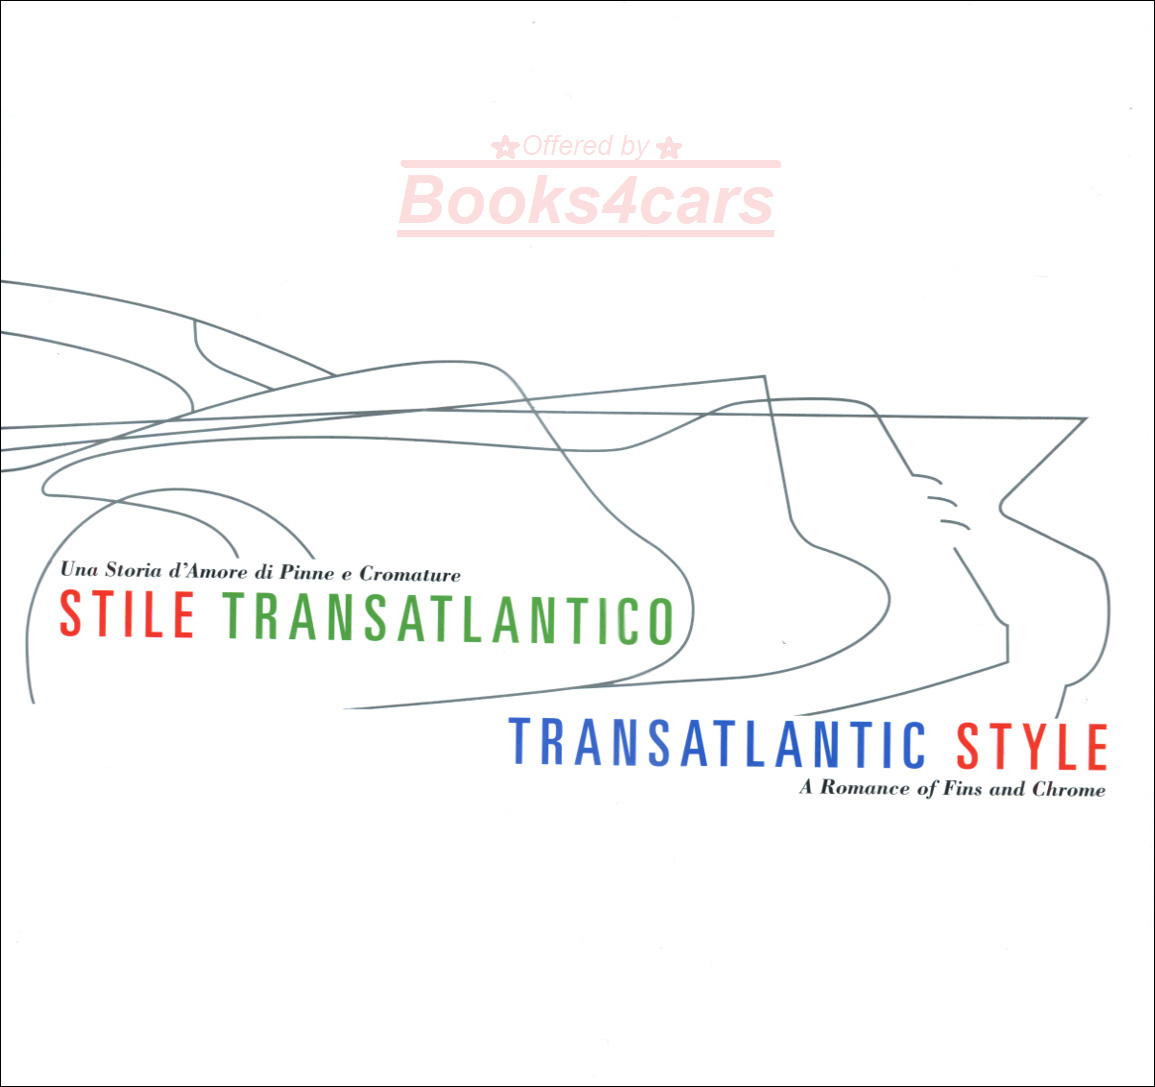 TransAtlantic Style by D. Osborne